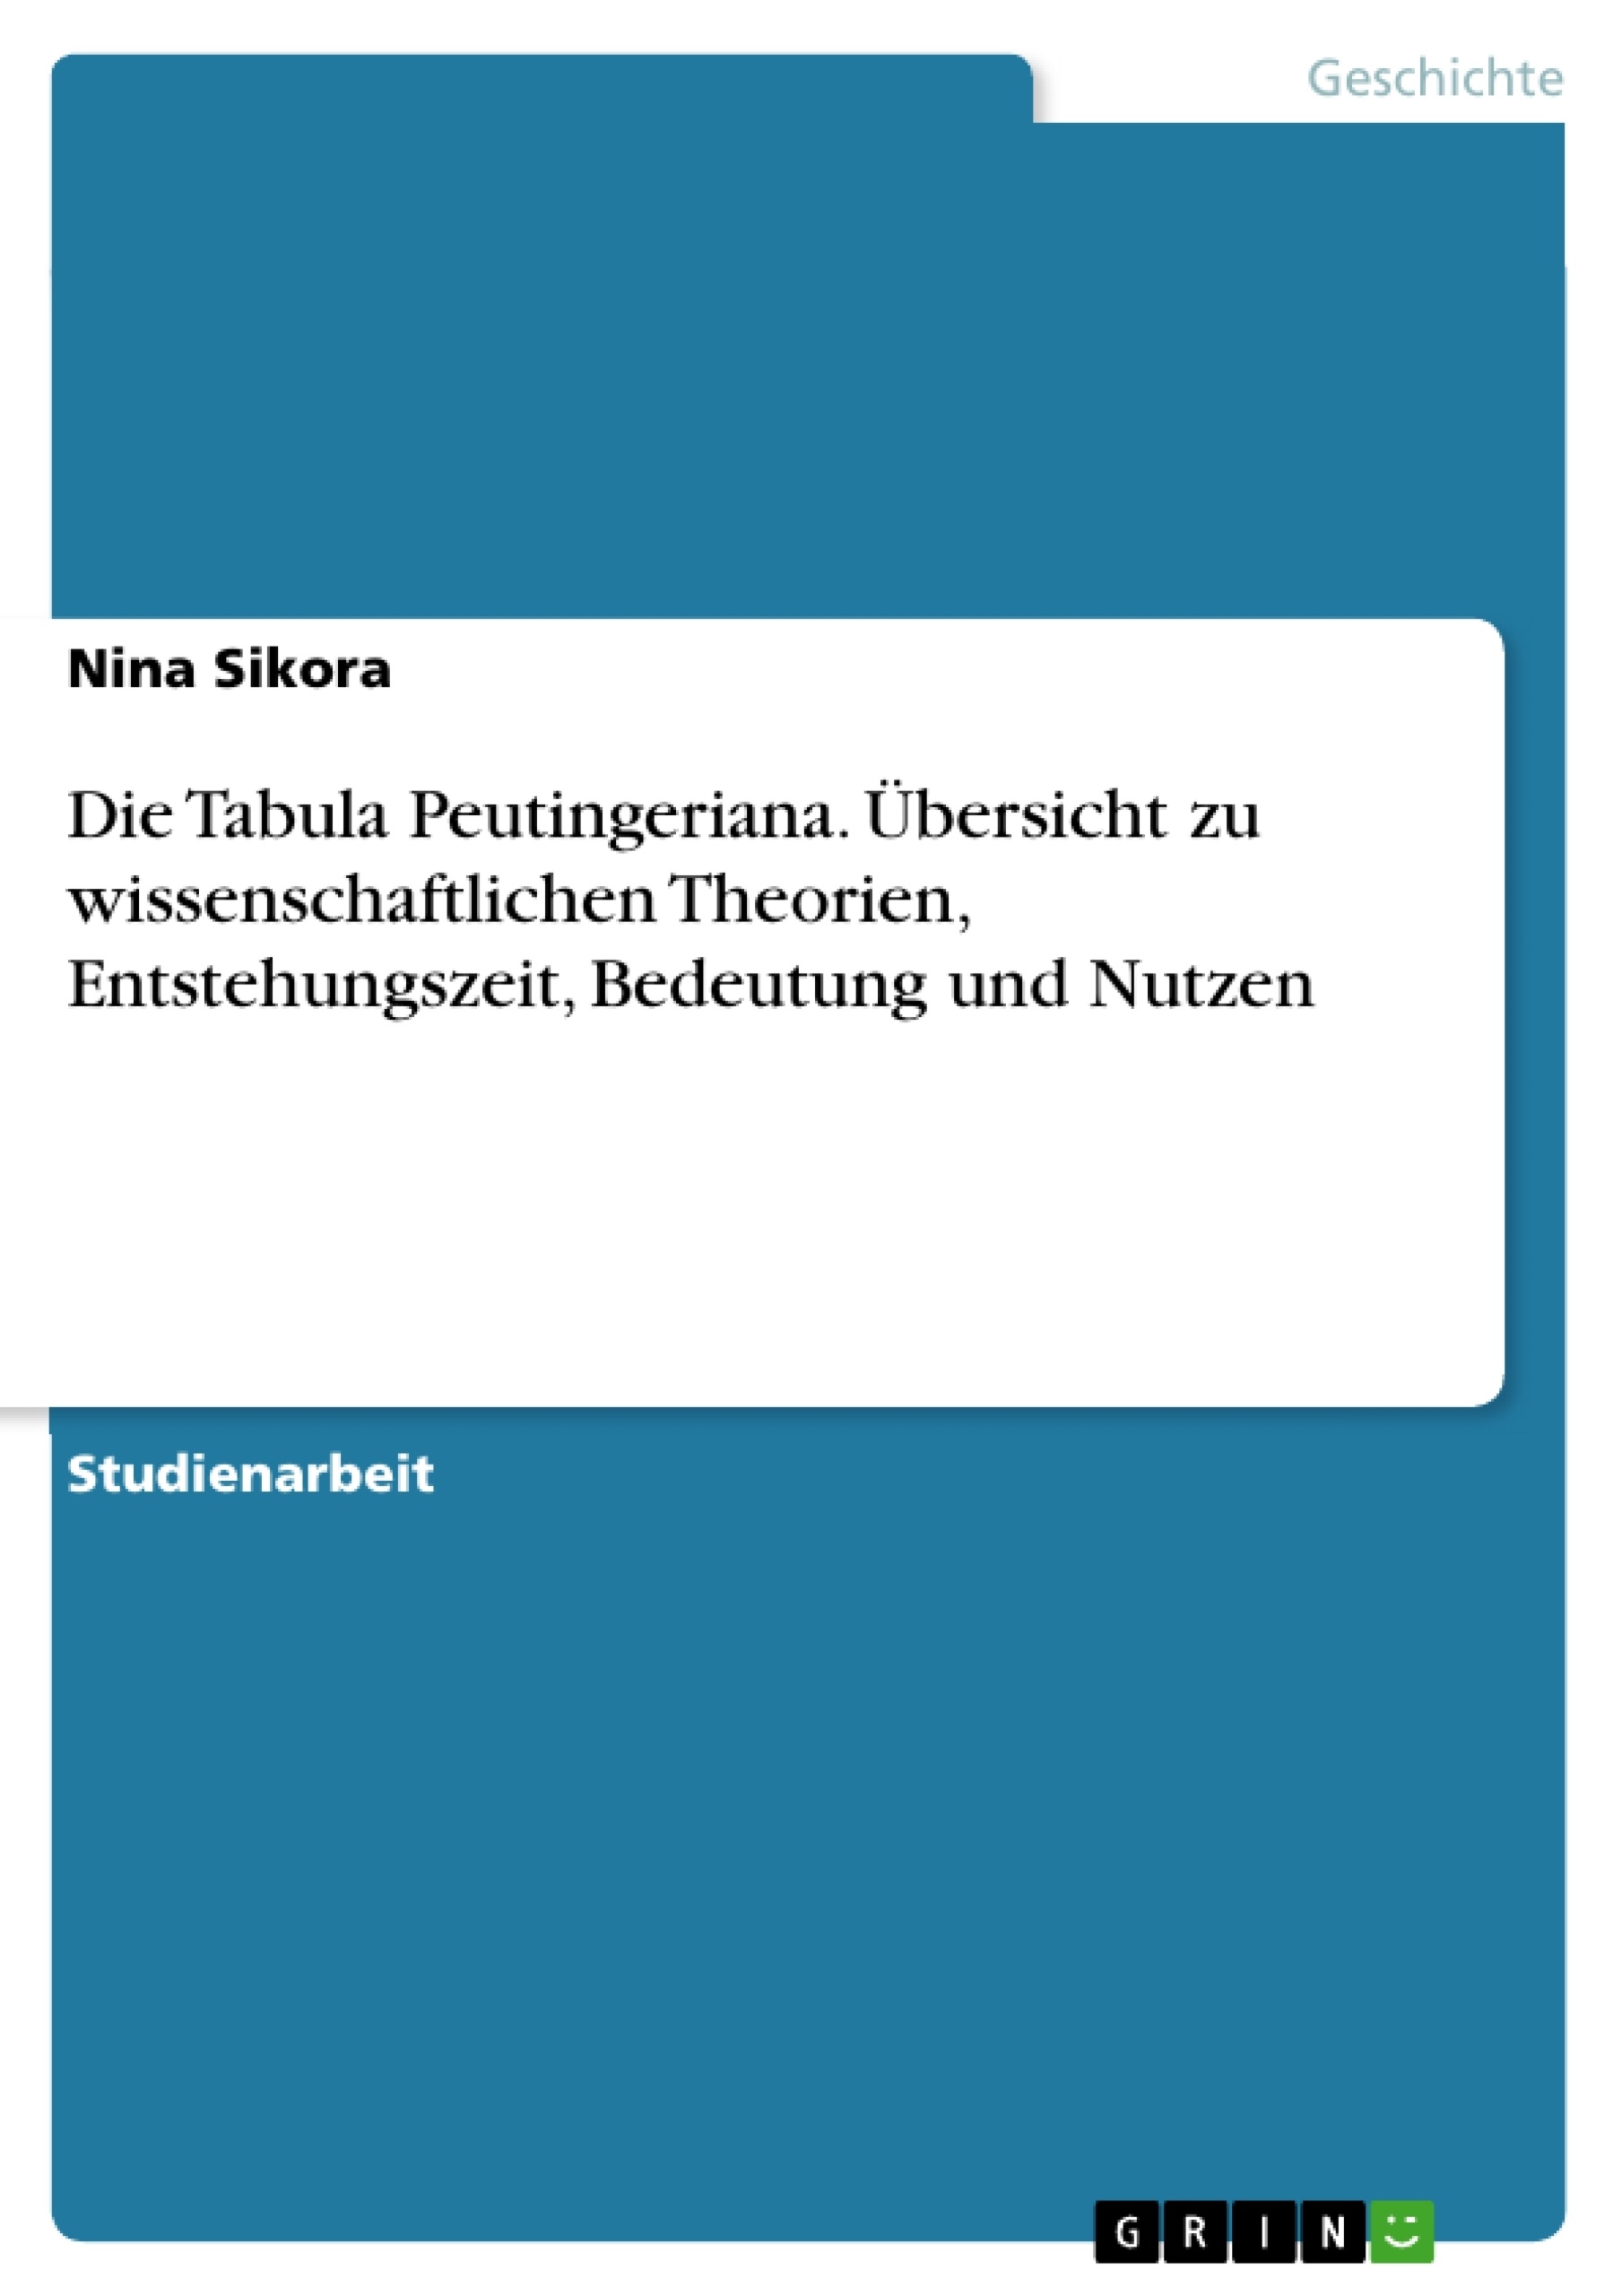 Title: Die Tabula Peutingeriana. Übersicht zu wissenschaftlichen Theorien, Entstehungszeit, Bedeutung und Nutzen